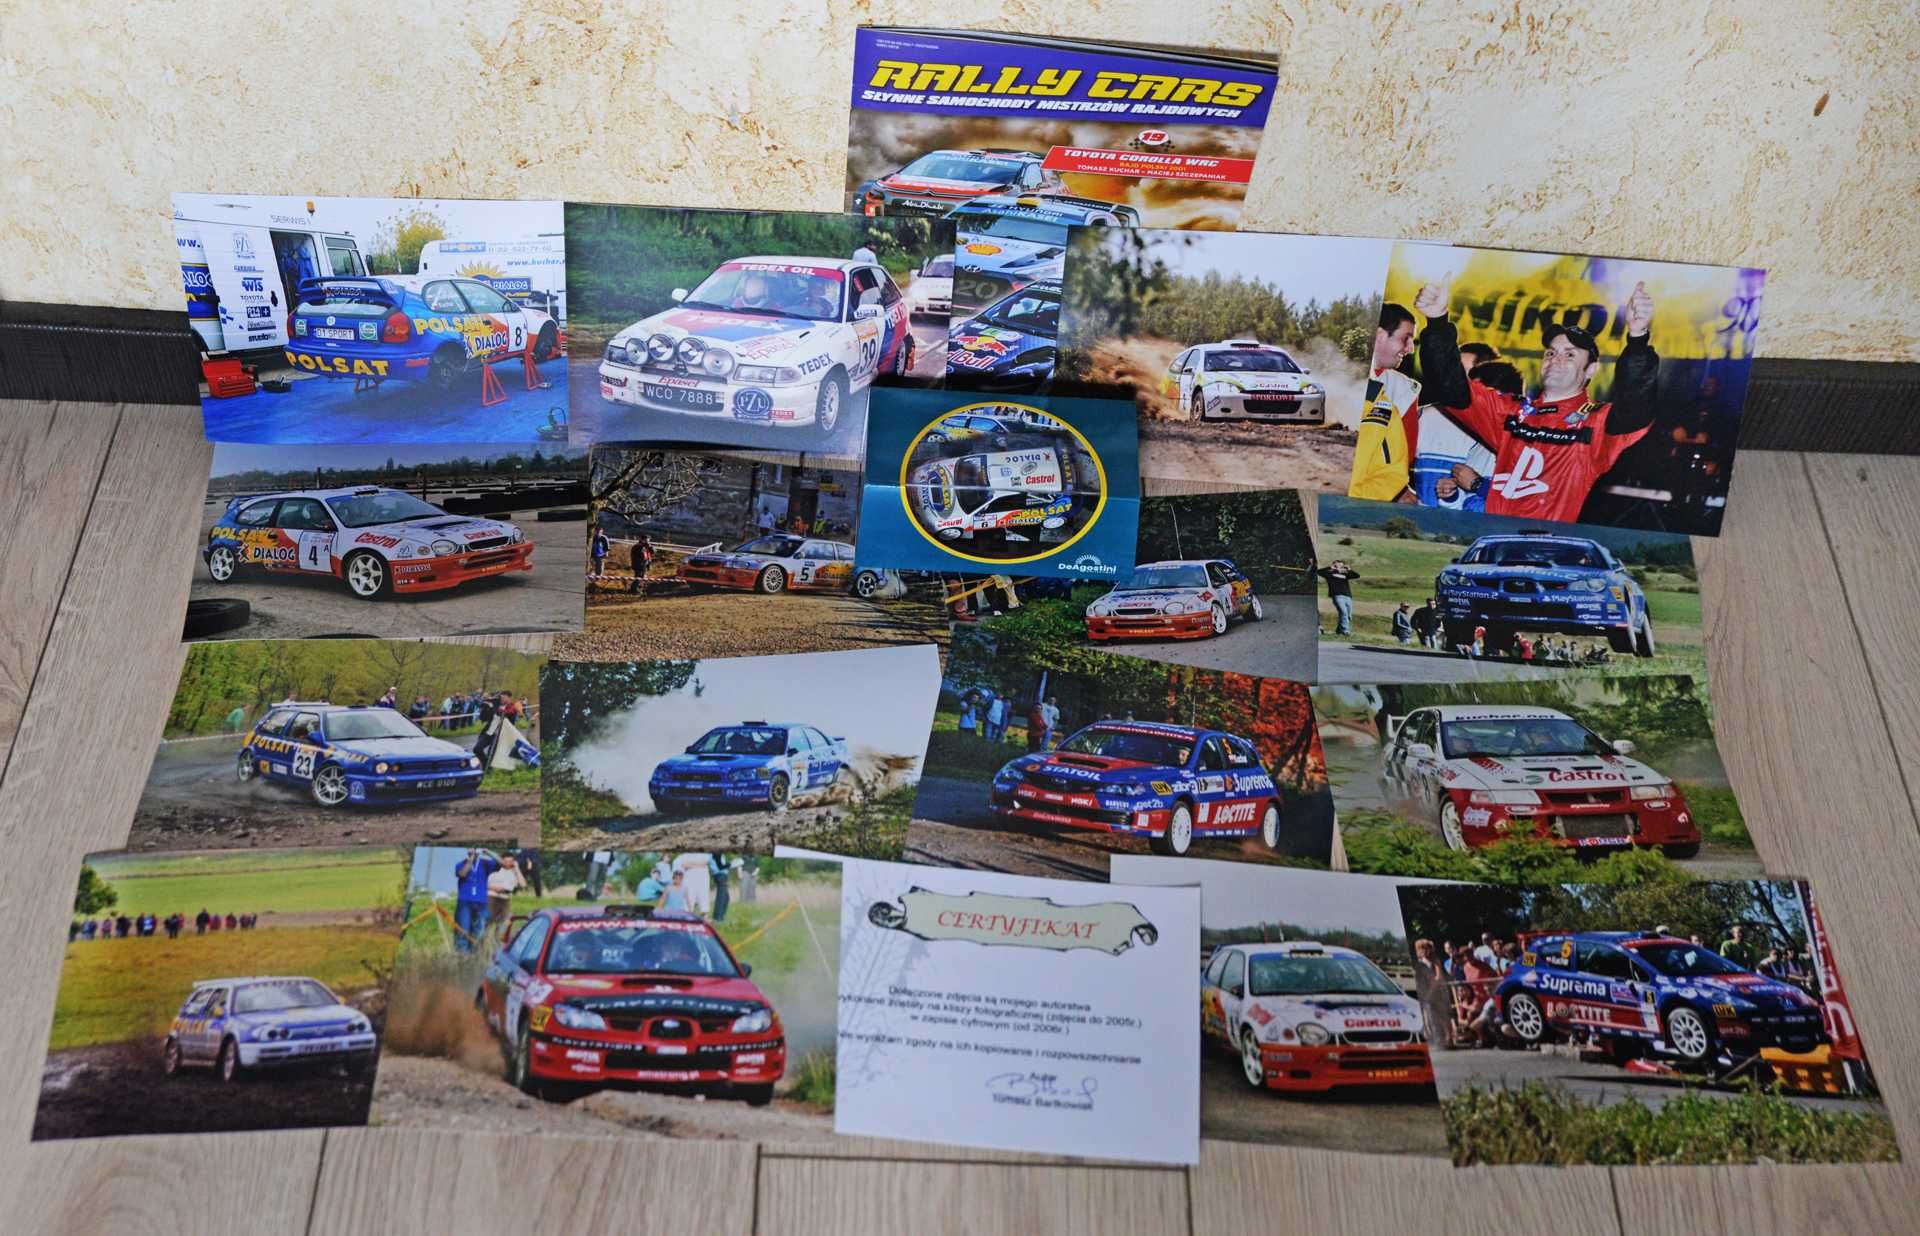 Tomasz Kuchar model+zdjęcia 1:43 Corolla WRC+16 oryginalnych zdjęć